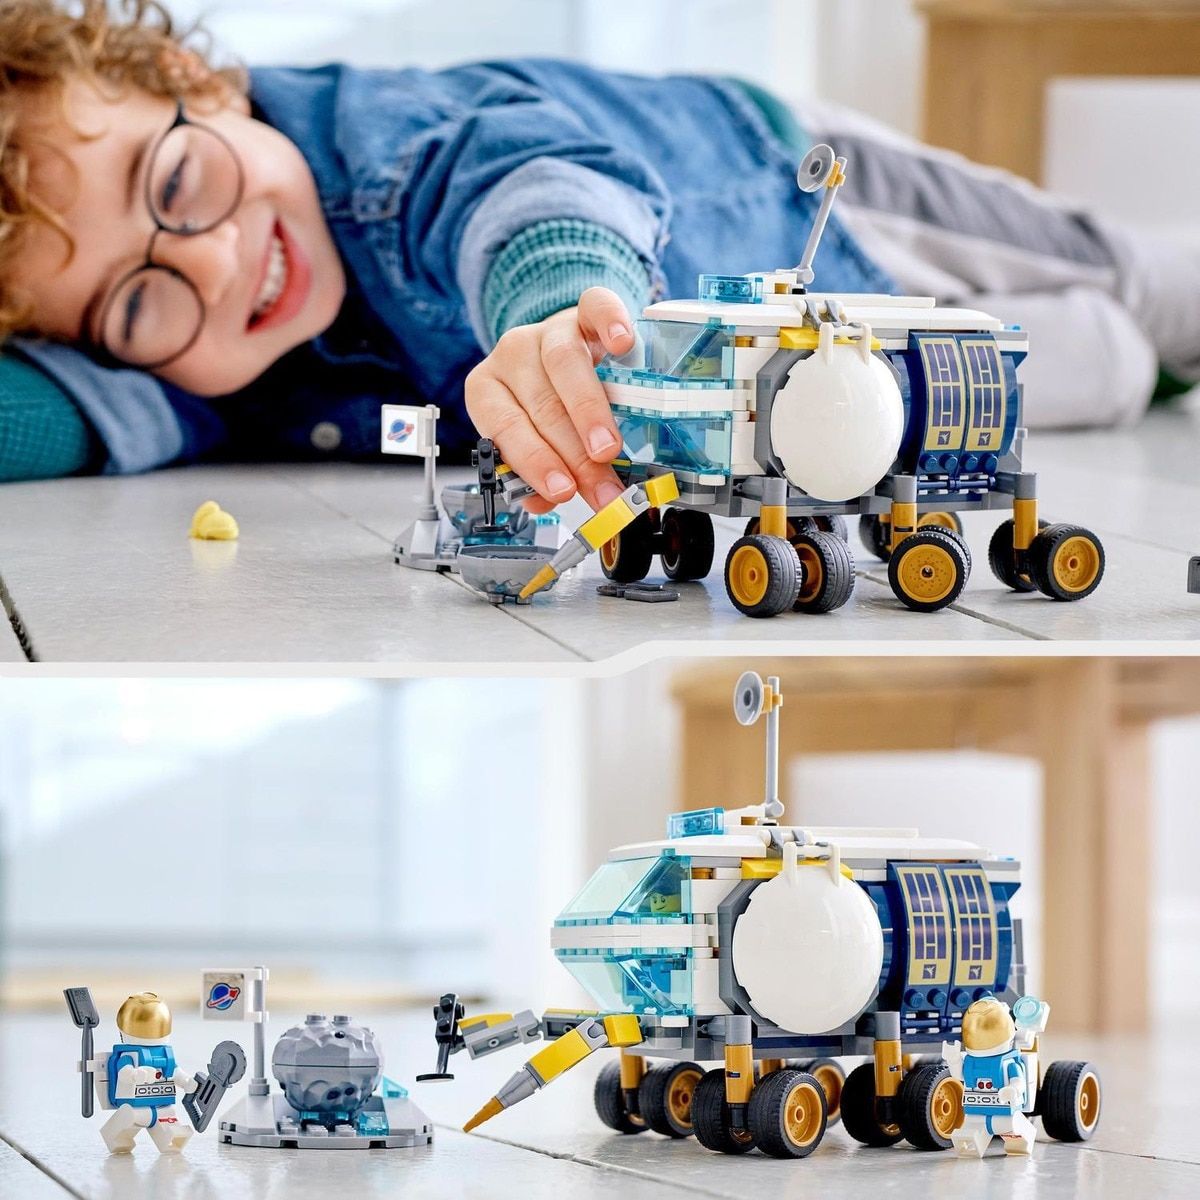 LEGO - Le véhicule d'exploration lunaire - 5 à 8 ans - JEUX, JOUETS -   - Livres + cadeaux + jeux